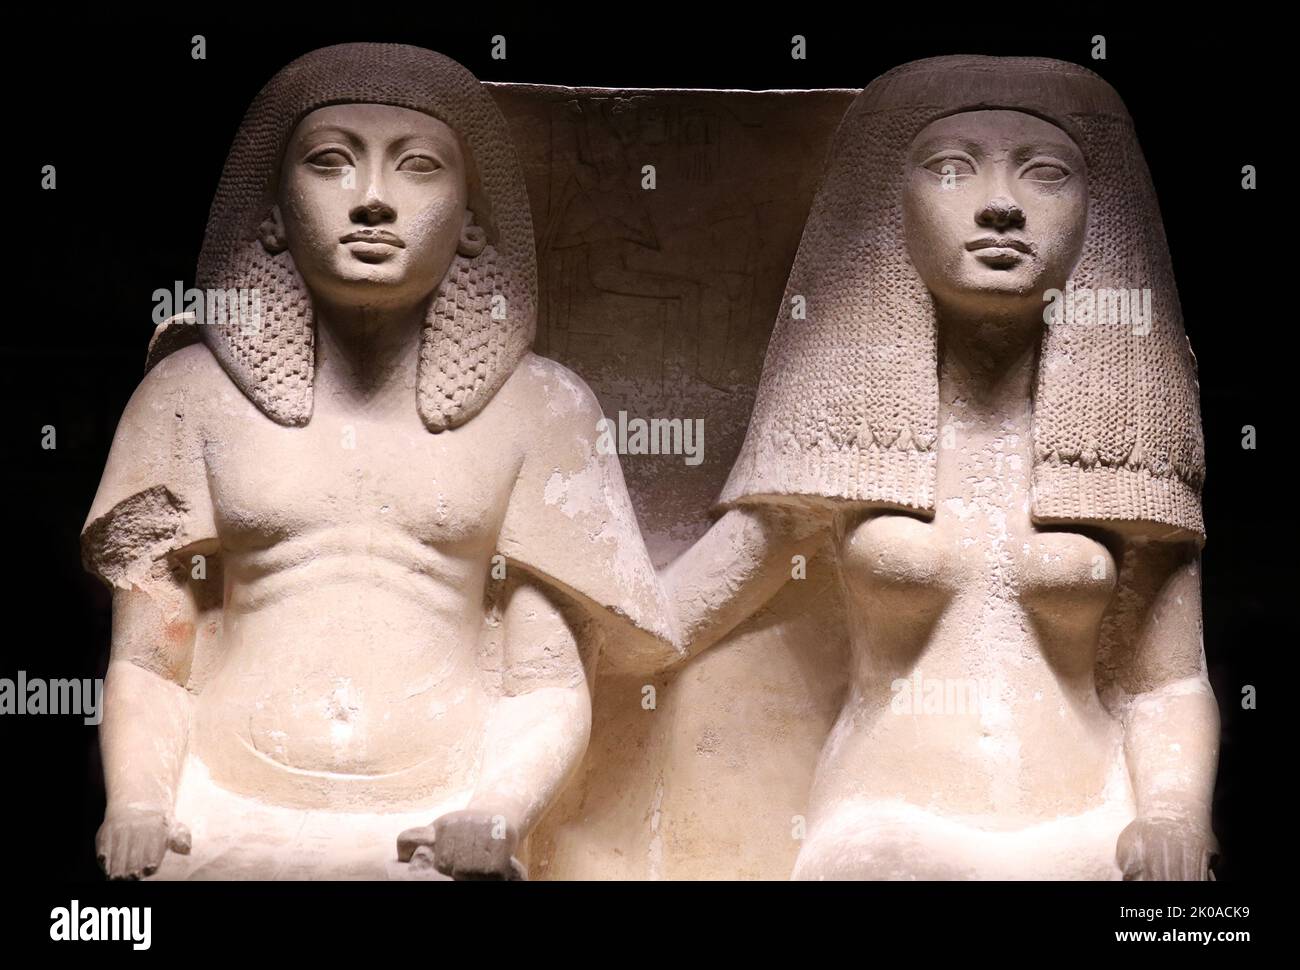 Kalksteinstatue von Tjay und Naya, Neukönigreich, 18. Dynastie (ca. -1295 v. Chr.). Diese hervorragend erhaltene Statue zeigt ein Paar sitzend, und trägt feine Kleidung und aufwendige Perücken, deren komplizierte Details vom Bildhauer originalgetreu dargestellt werden. Naya hat liebevoll ihre rechte Hand auf der Schulter ihres Mannes. Auf der Rückseite ist das Paar in Relief sitzend an einem Opfertisch mit Blick auf die Dame 'Tinr' zu sehen. Giza, Memphite-Region, Saqqara. Sharm al-Sheikh Museum, Ägypten. Stockfoto